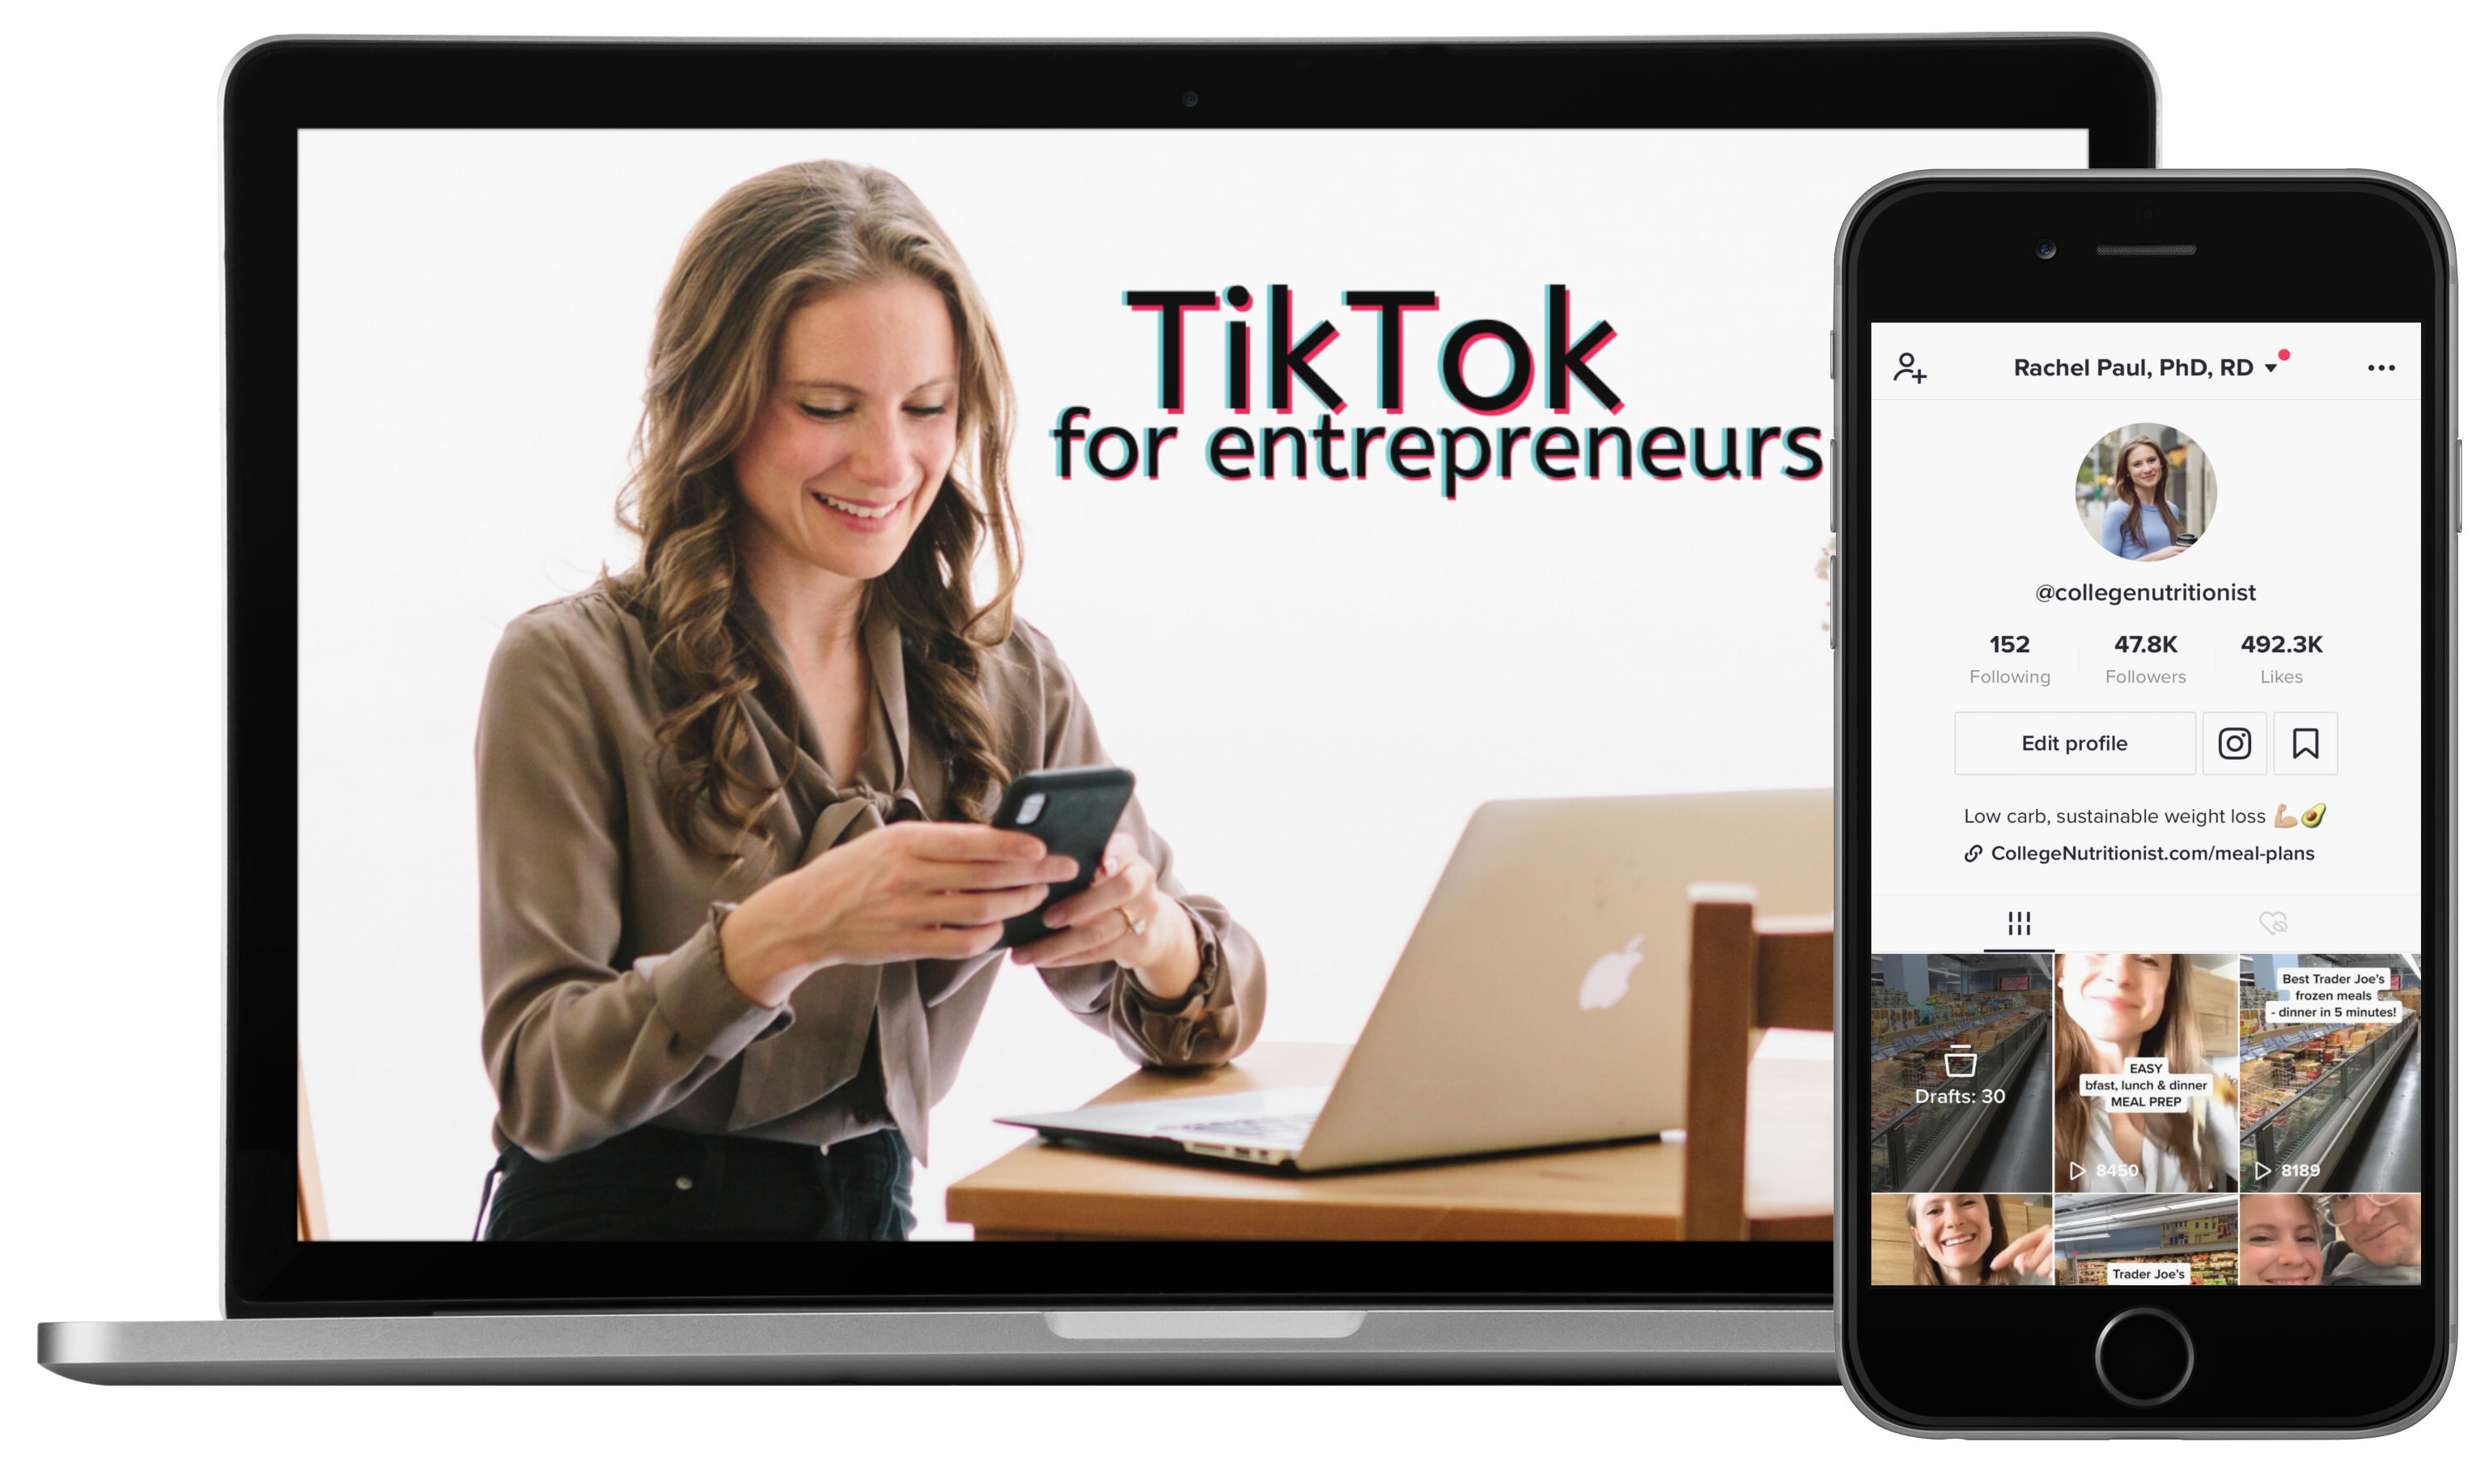 TikTok for entrepreneurs